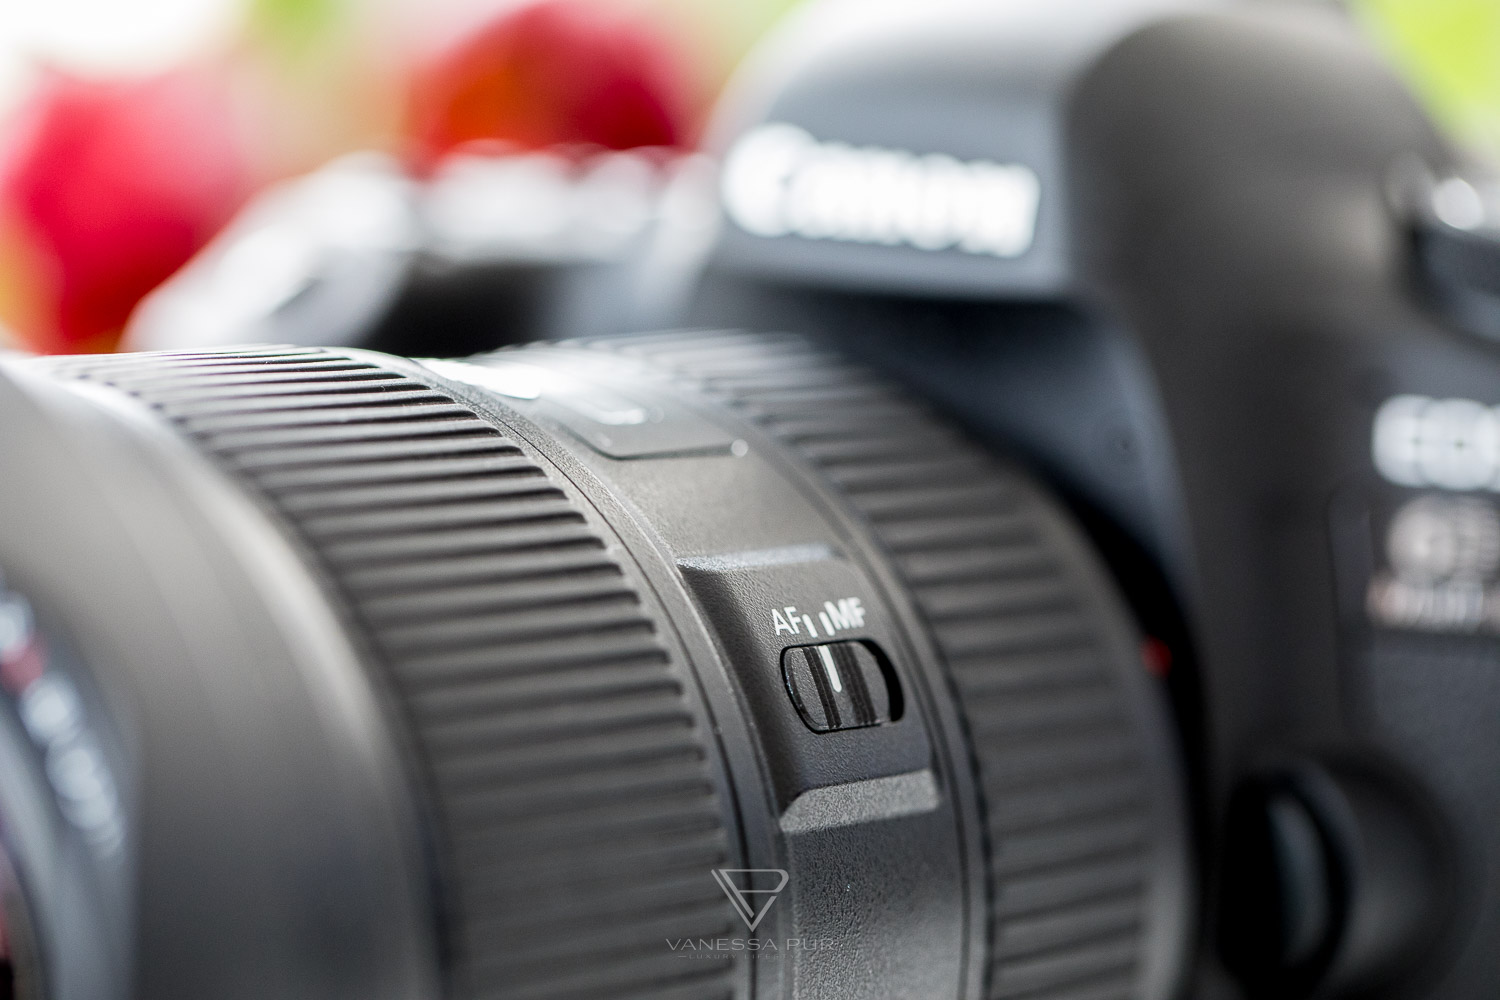 Canon EF 16-35 f/2.8 L III USM Objektiv im Test für Video und Foto - Fotoblog und Videoblogger